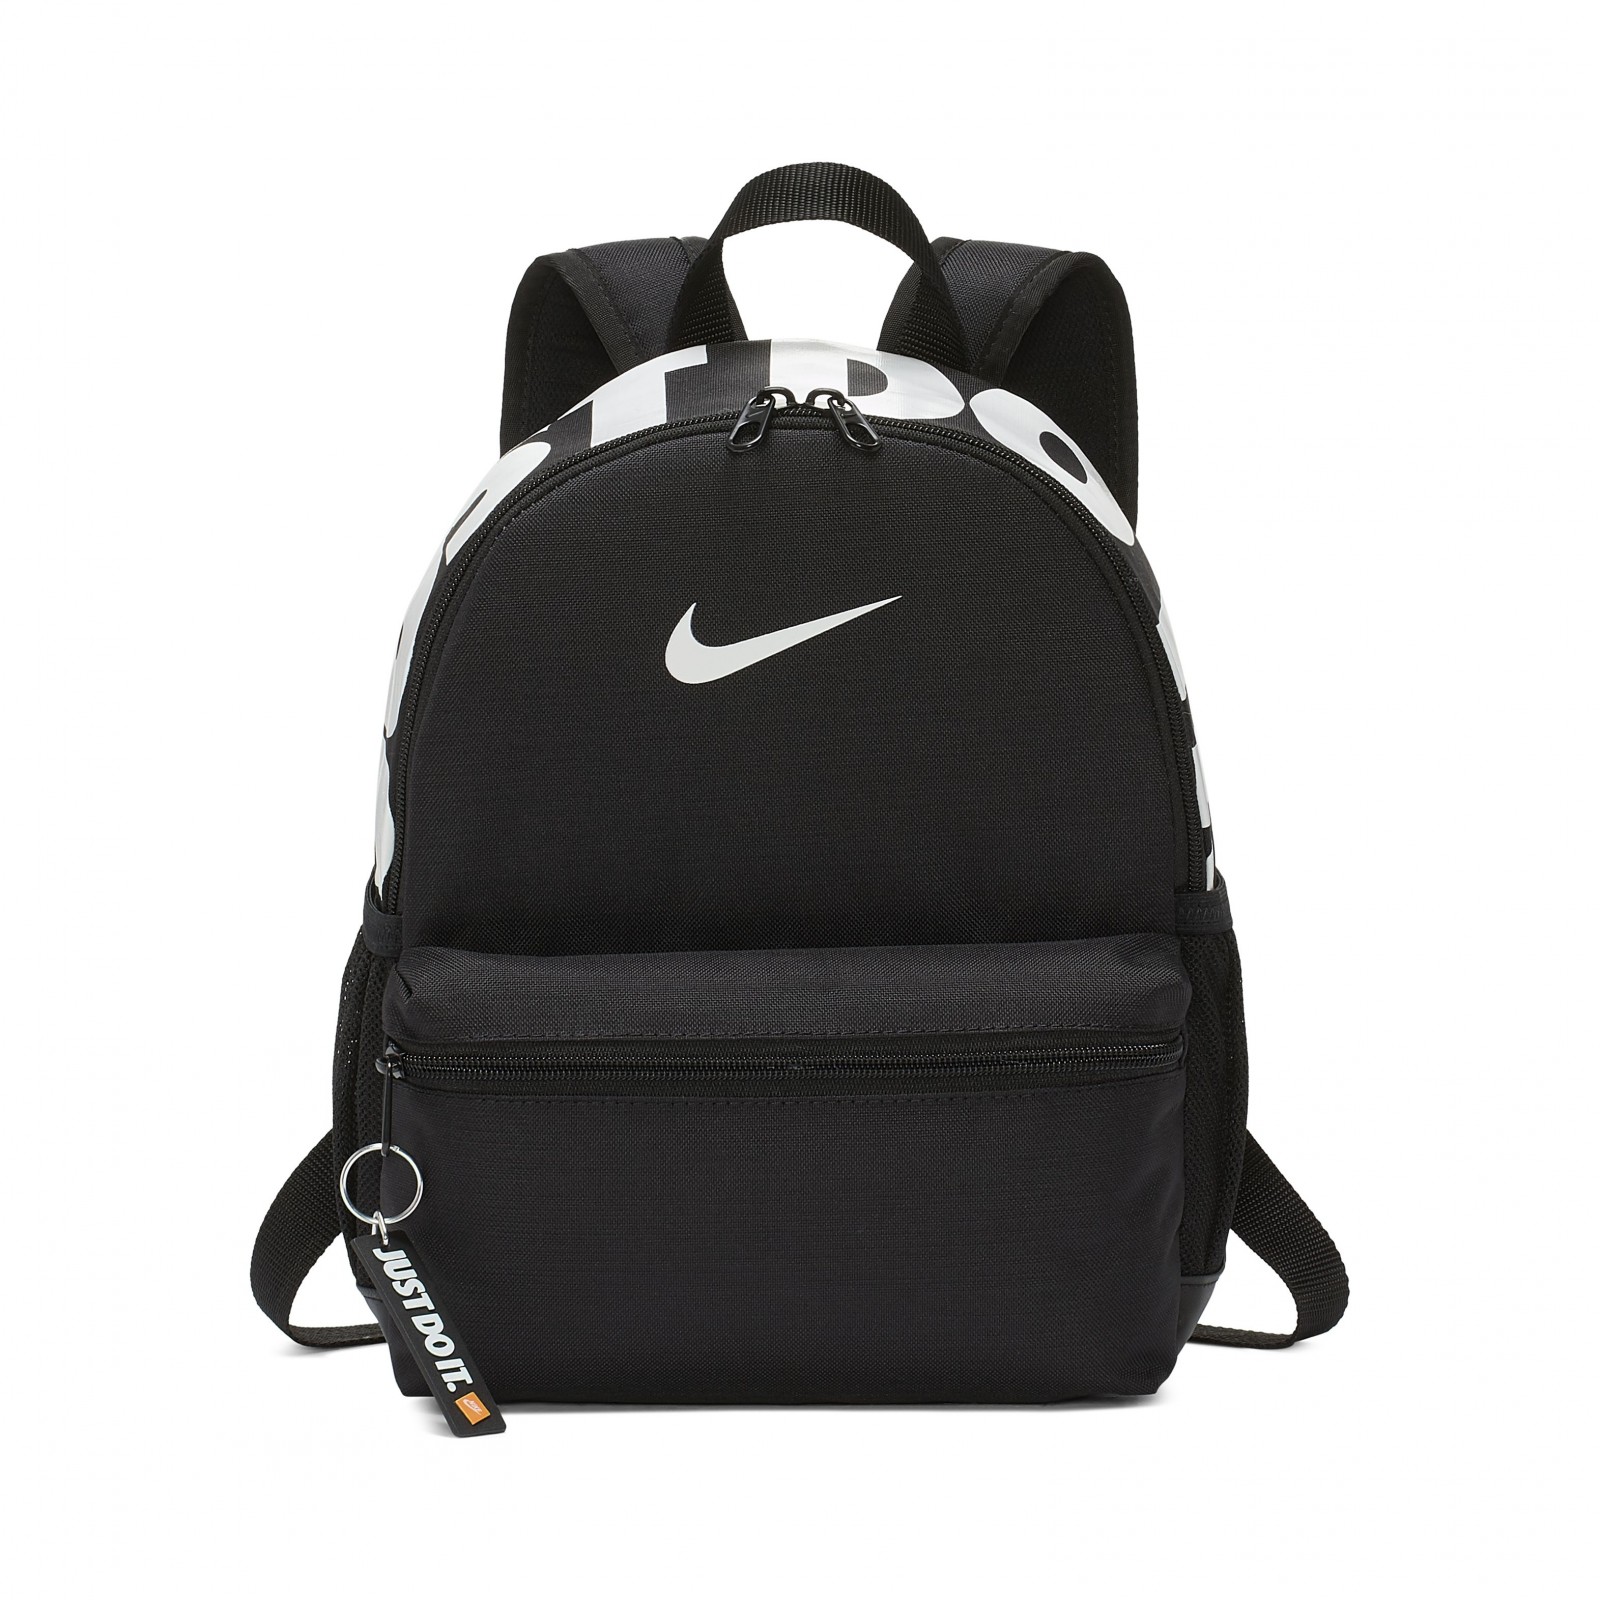 Nike Brasilia JDI Backpack